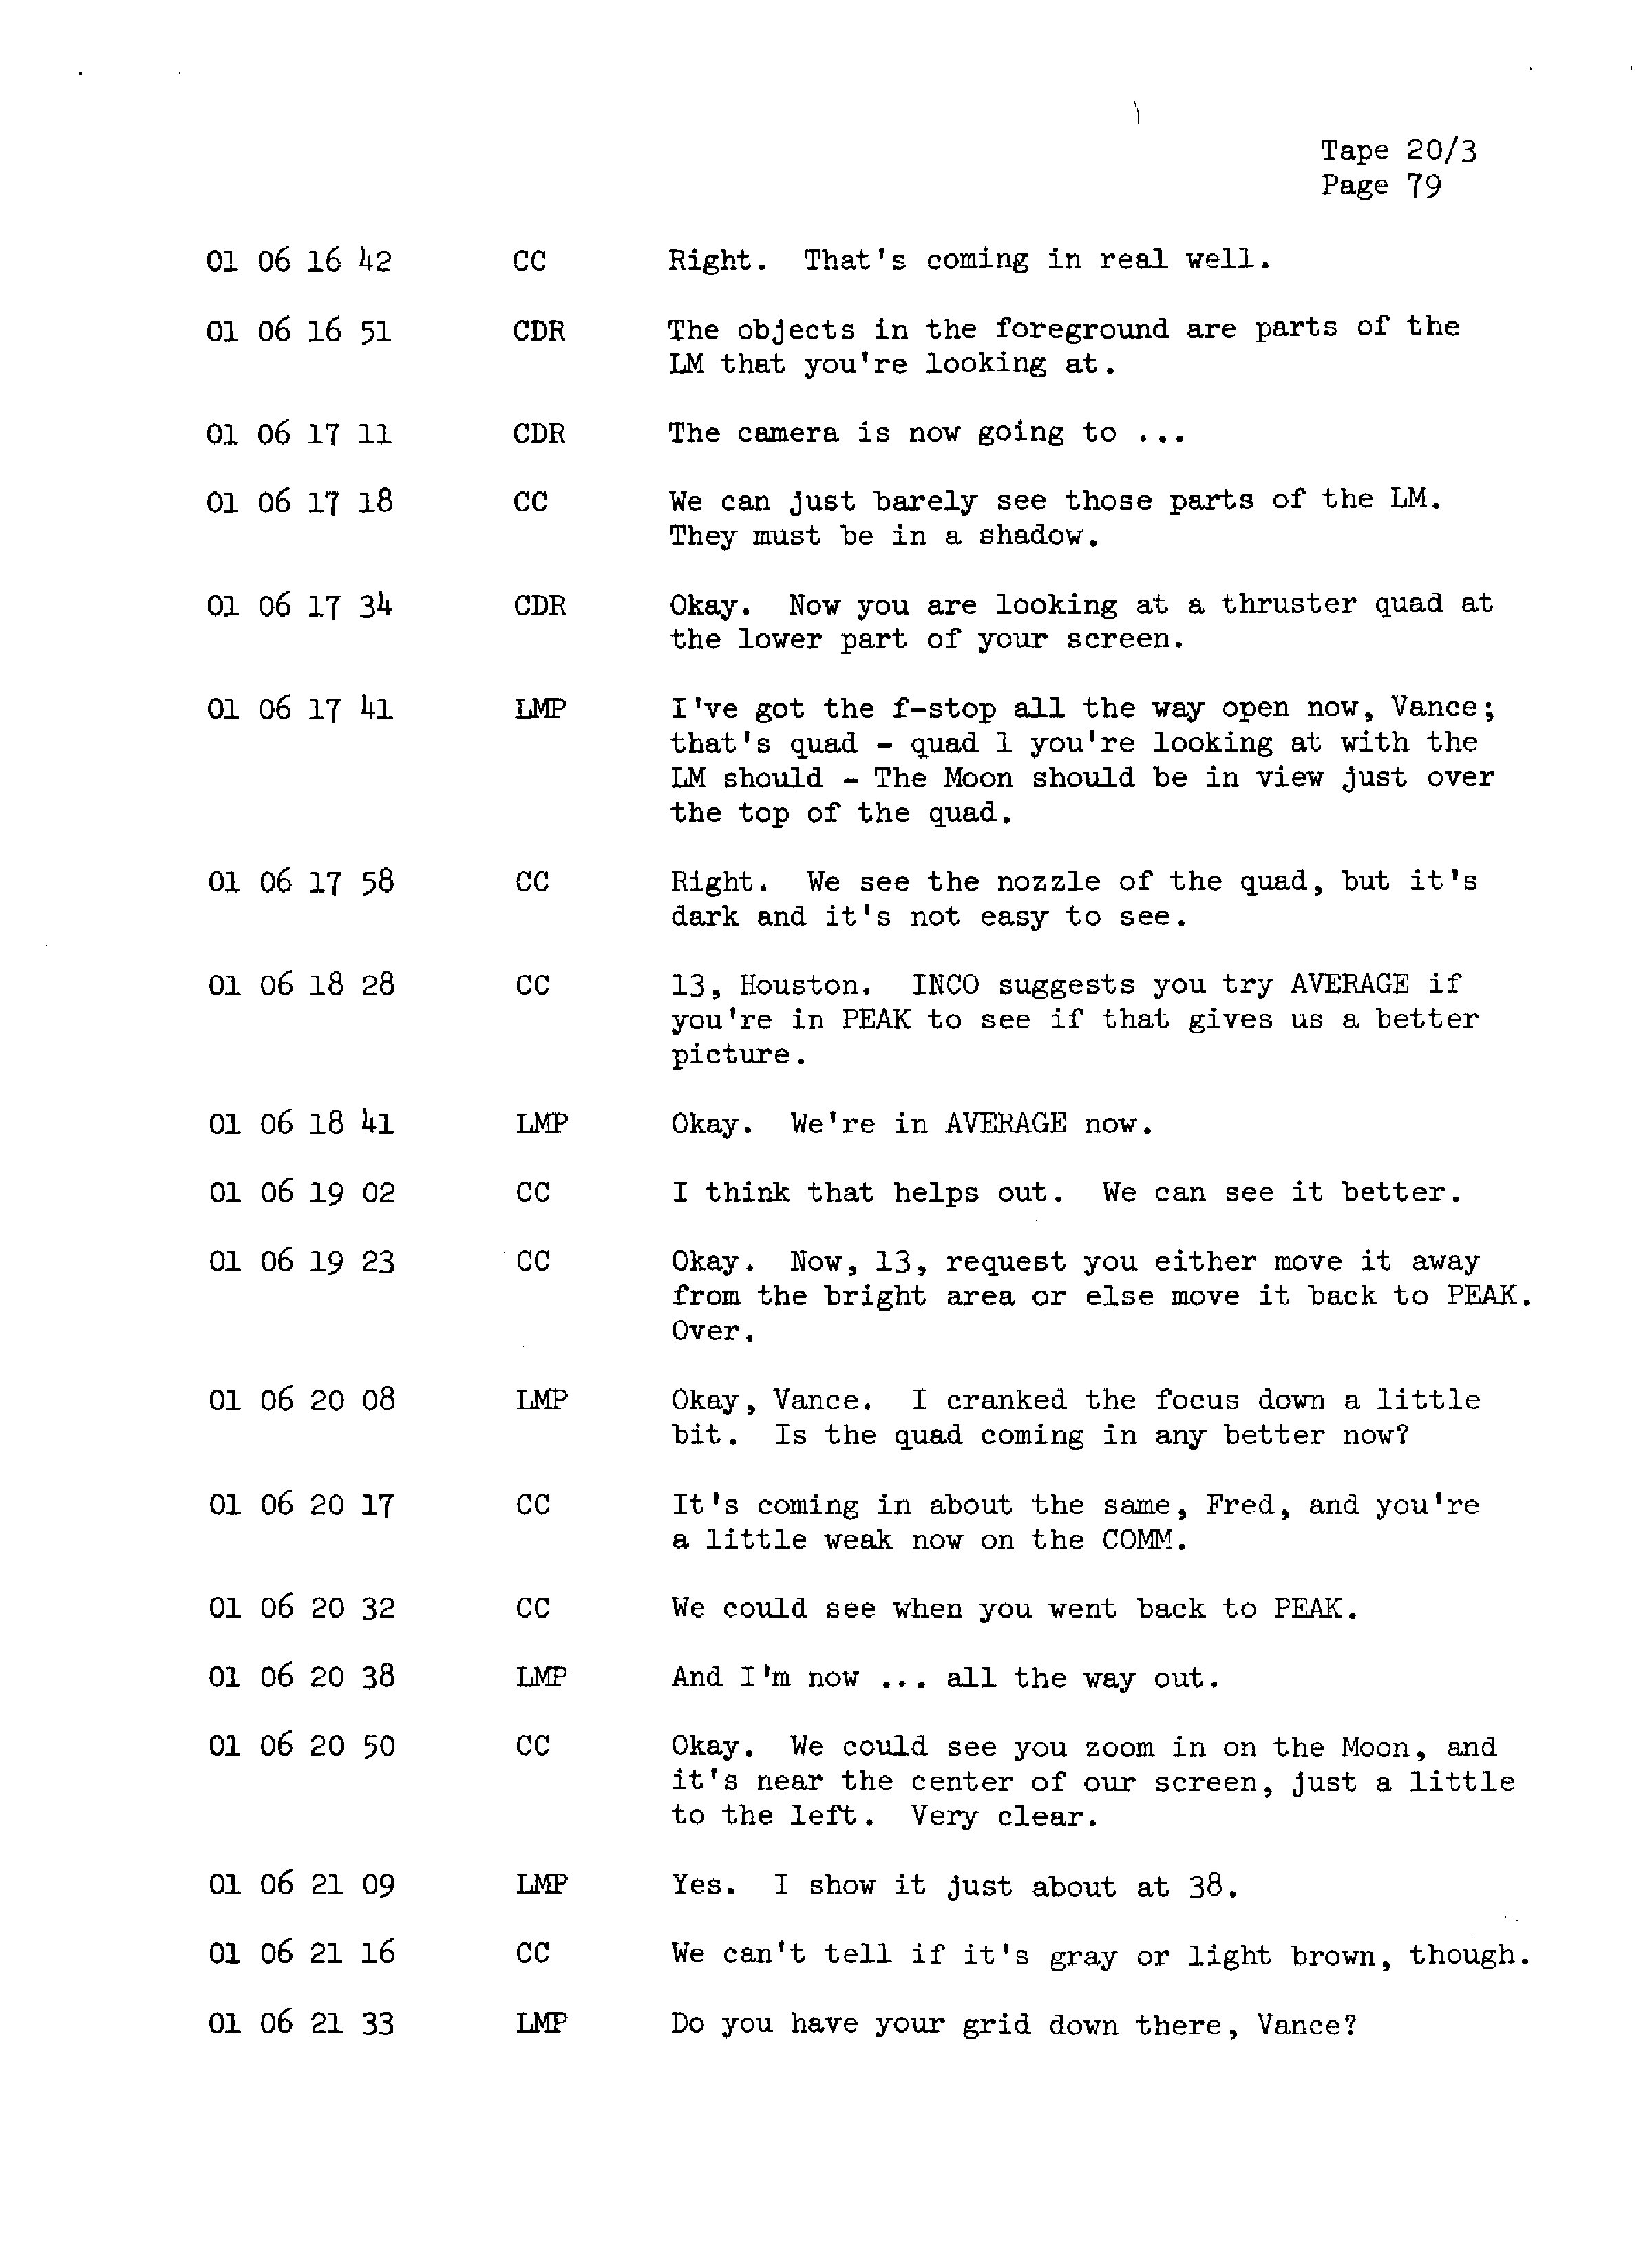 Page 86 of Apollo 13’s original transcript